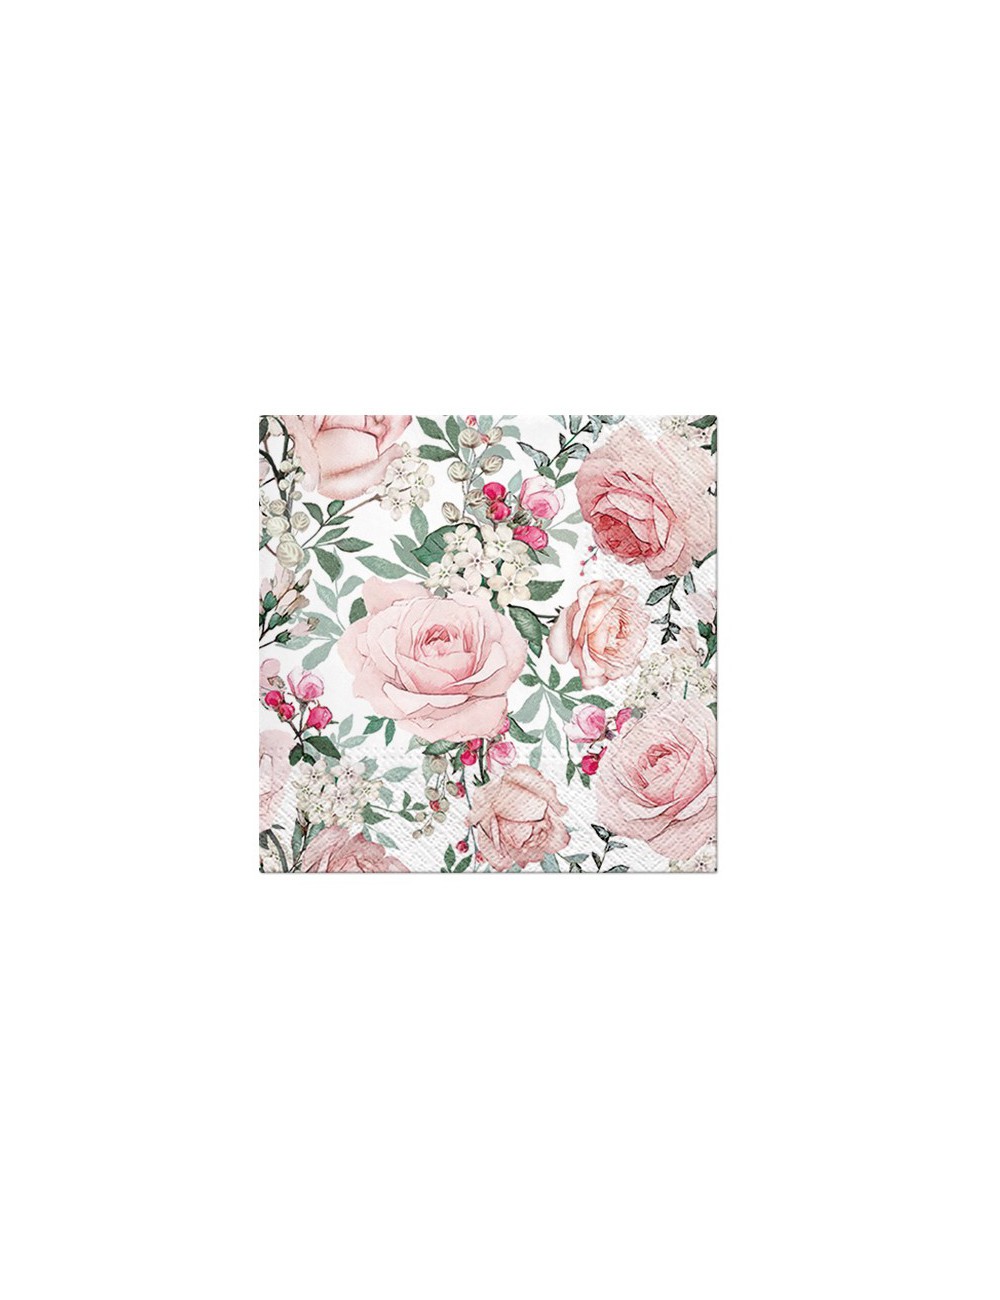 Serwetki papierowe na wesele wiosnę PINK ROSES różowe róże 20 szt.